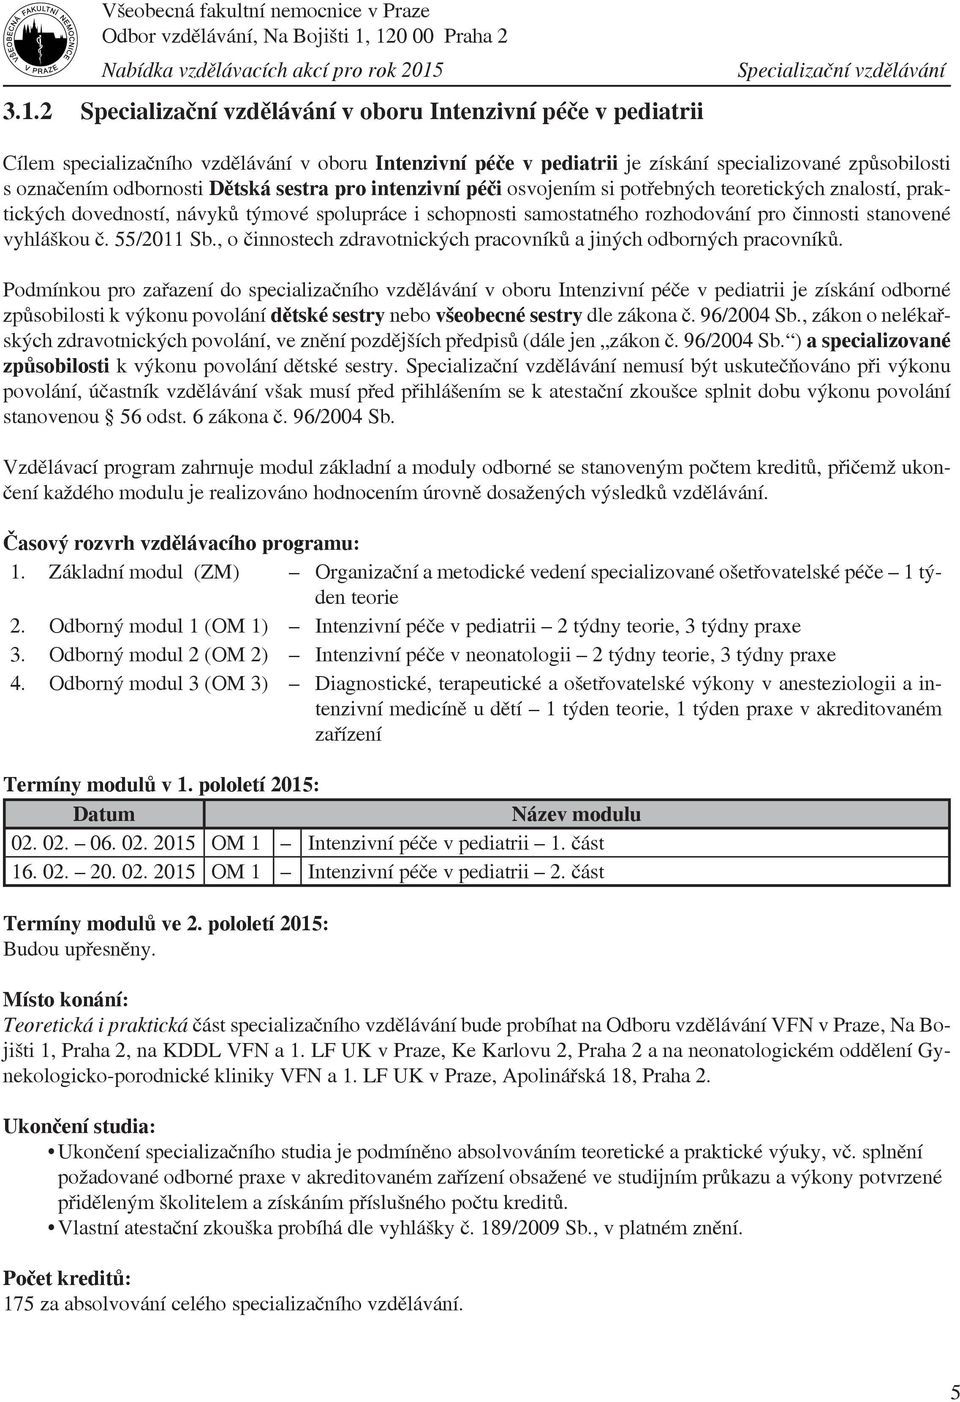 činnosti stanovené vyhláškou č. 55/2011 Sb., o činnostech zdravotnických pracovníků a jiných odborných pracovníků.